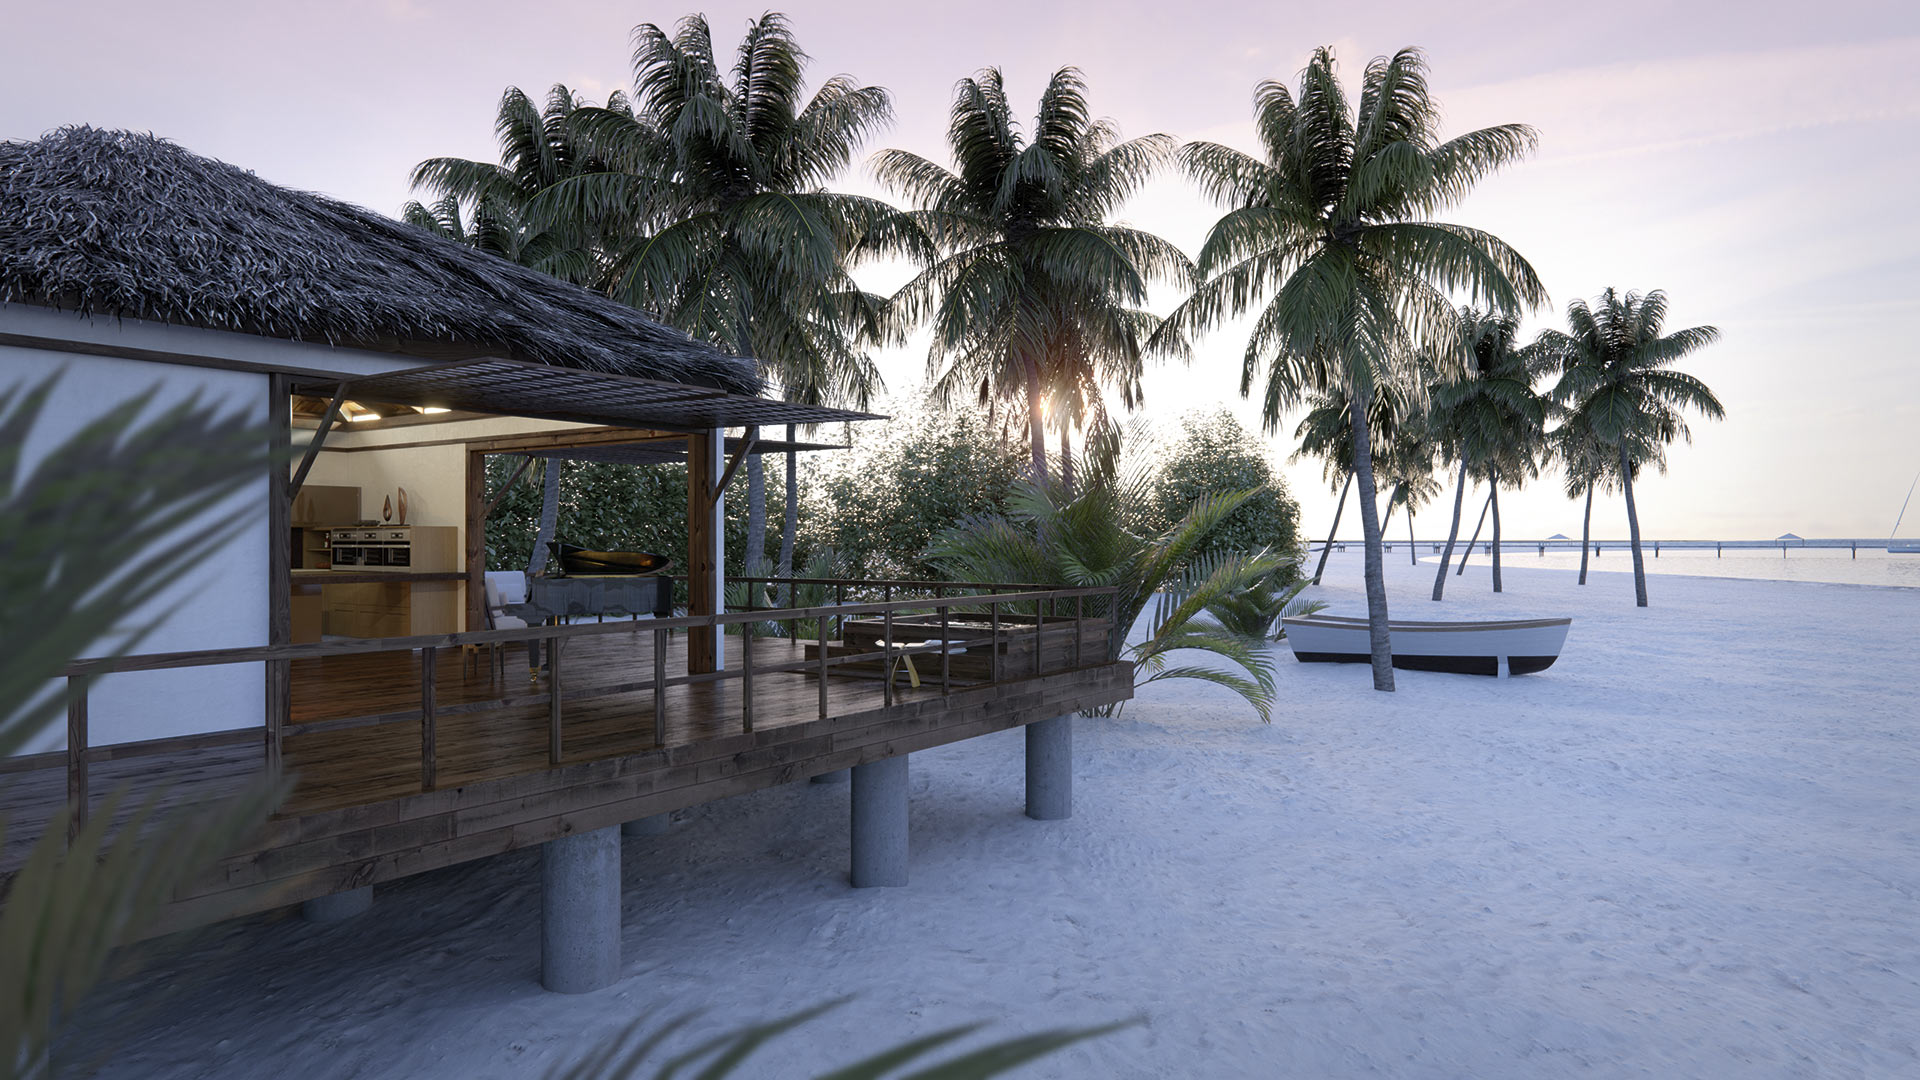 Vista de la cocina en un entorno rústico y veraniego en el que se observan palmeras y una barca en una playa